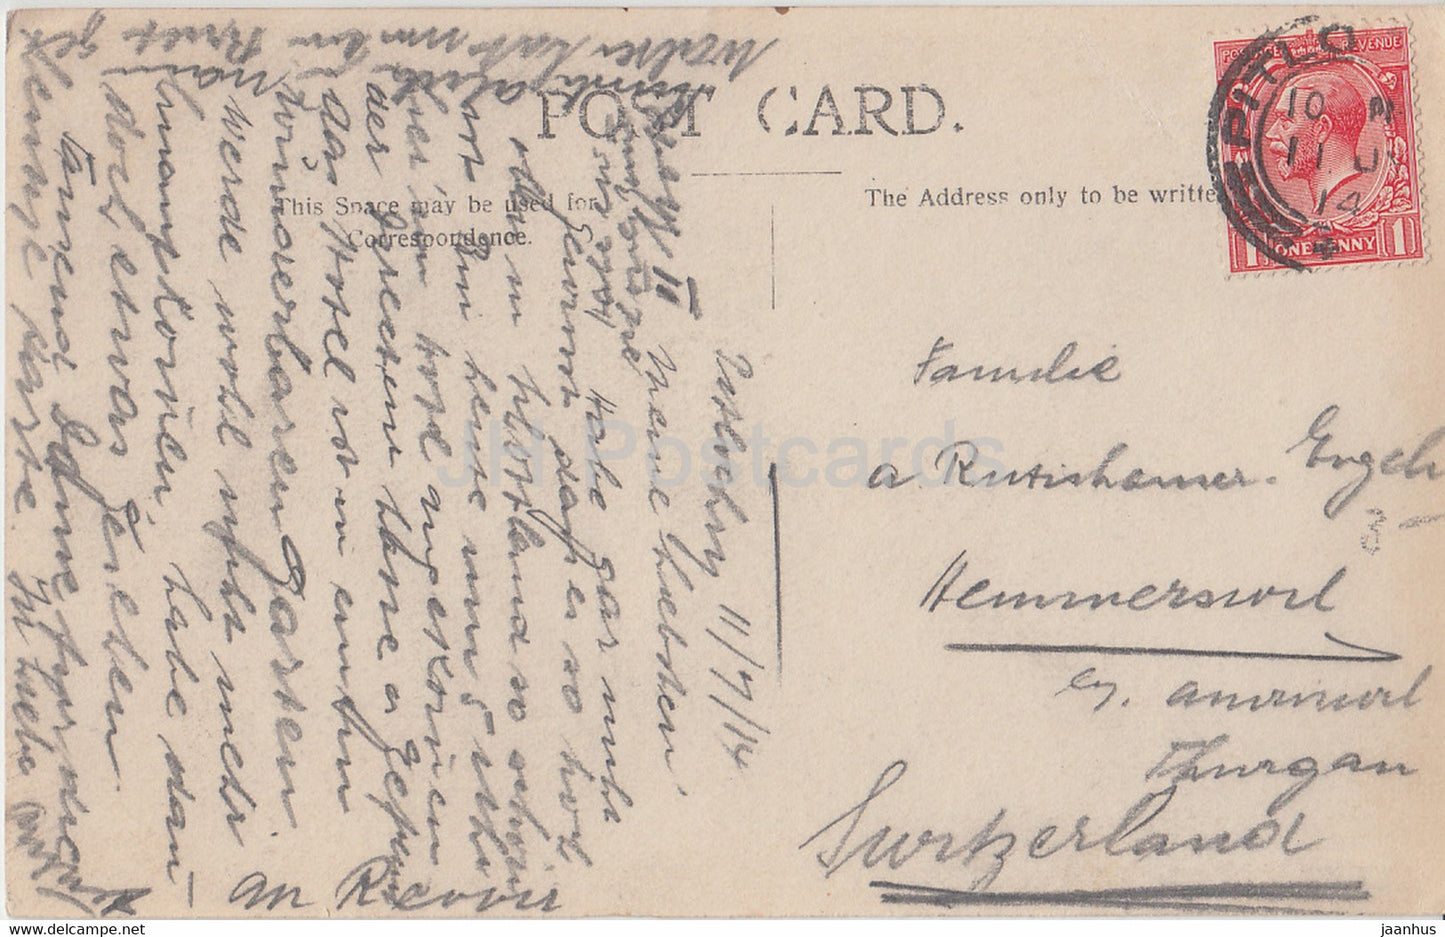 Pitlochry - Atholl Palace Hotel - carte postale ancienne - 1914 - Écosse - Royaume-Uni - utilisé